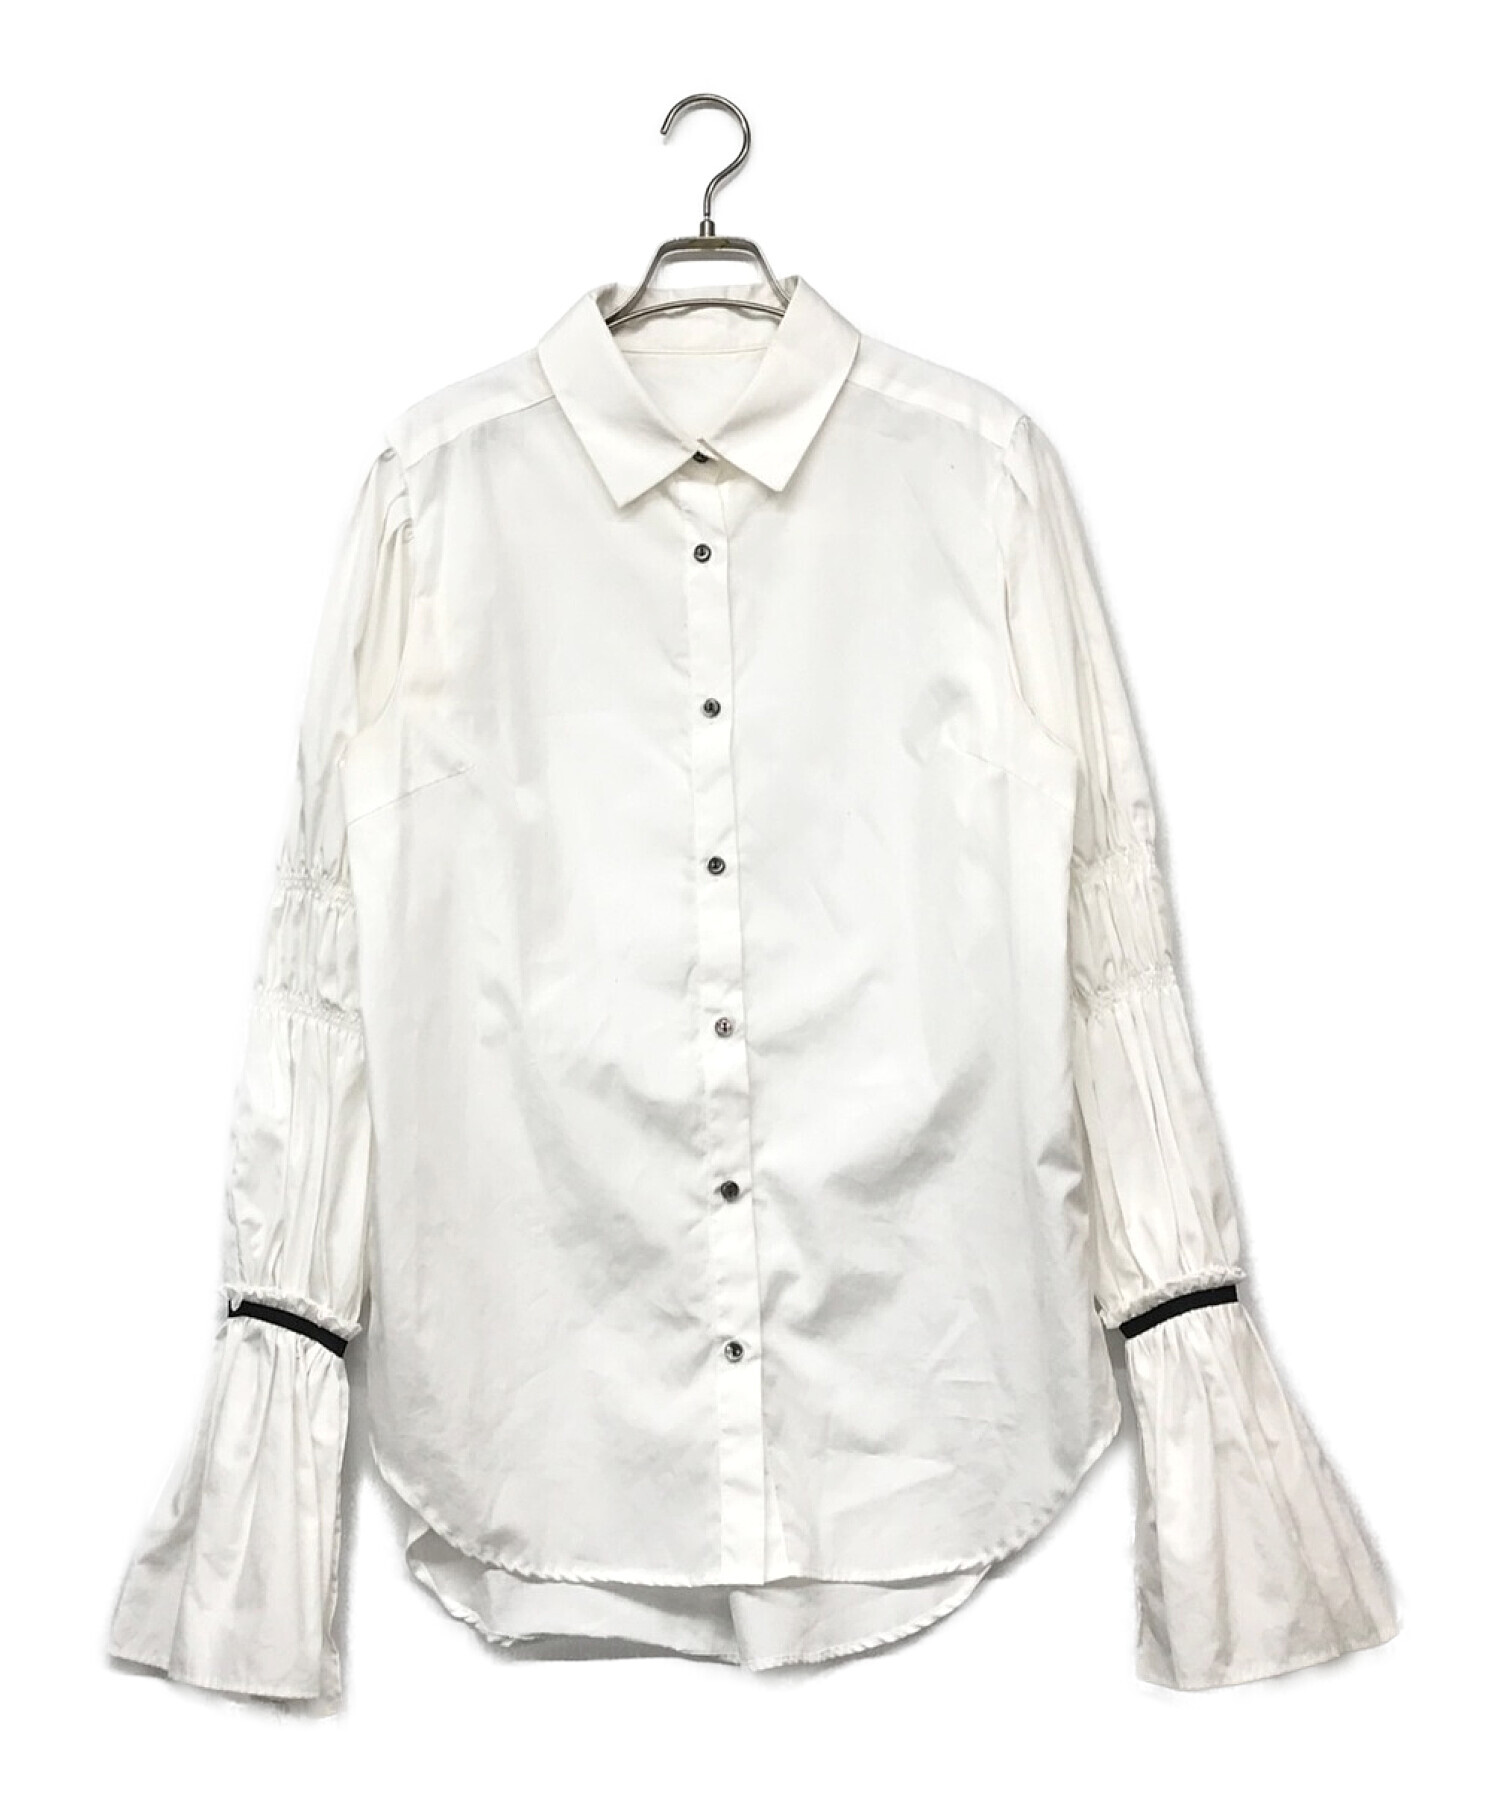 MAISON SPECIAL (メゾンスペシャル) ベルスリーブシャツ ホワイト サイズ:M